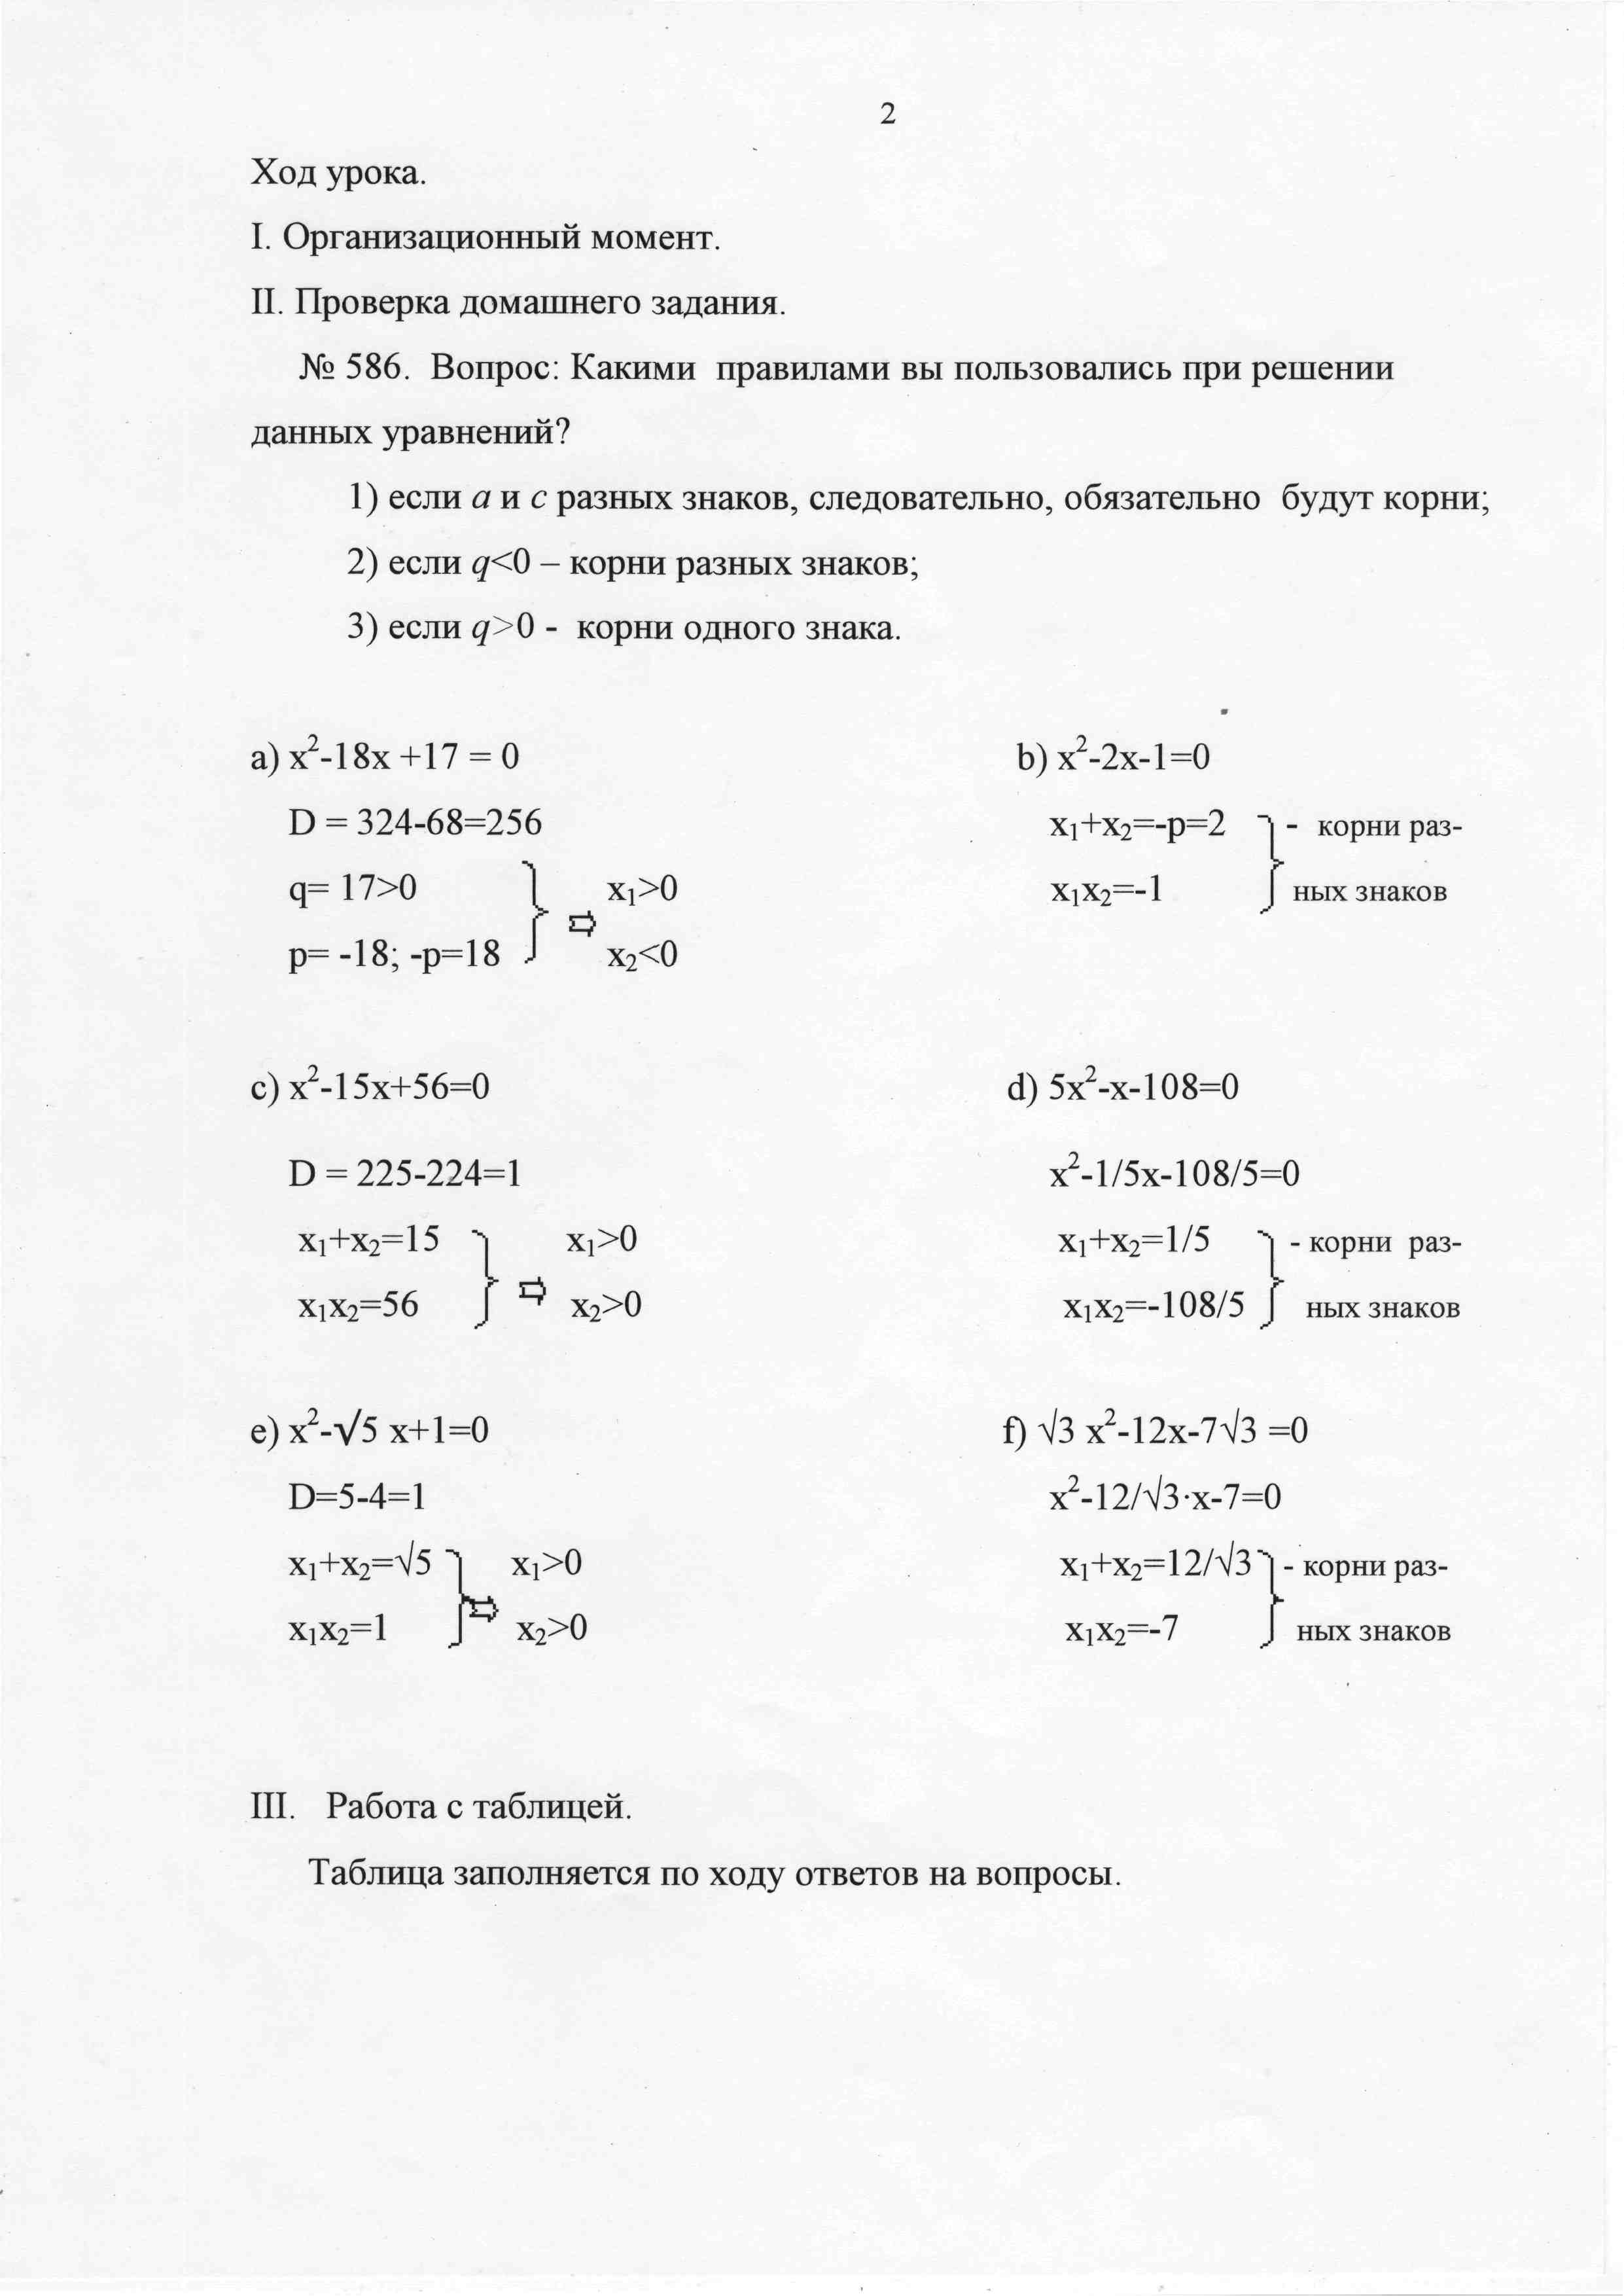 Разработка урока по математике на темуКвадратные уравнения